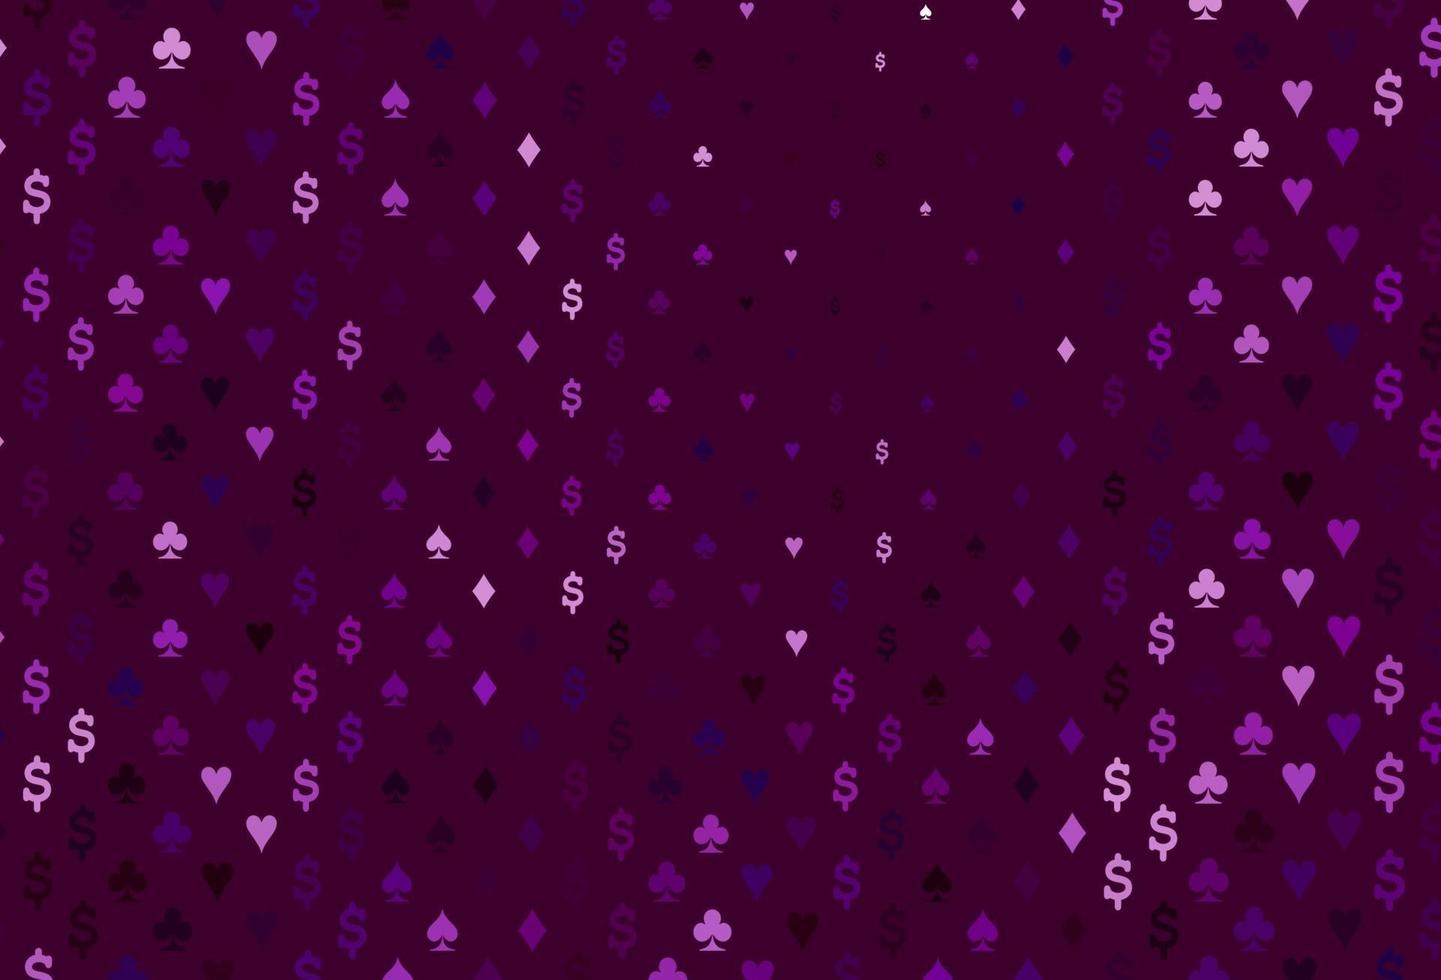 modello vettoriale viola scuro con il simbolo delle carte.